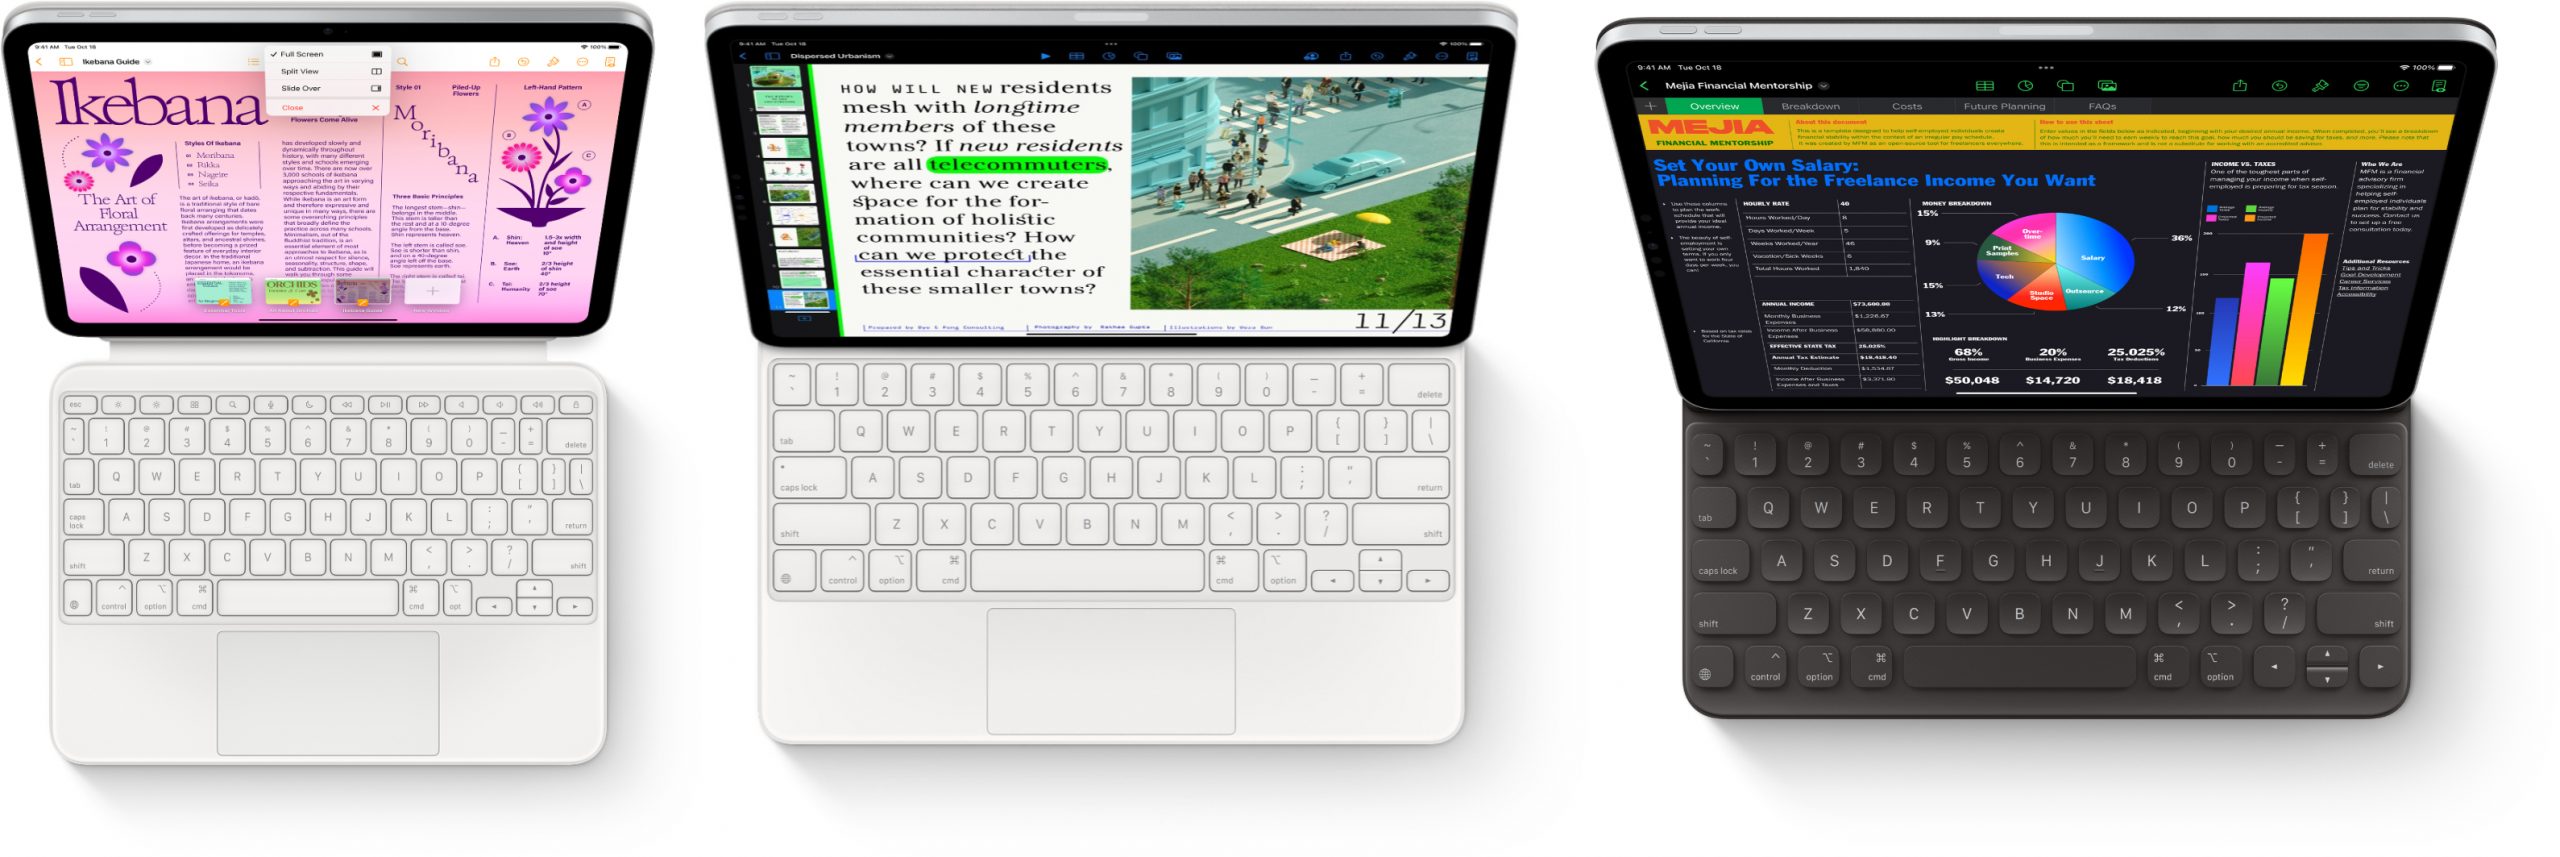 Vasemmalla iPad ja Magic Keyboard Folio. Keskellä ja oikealla iPad Airin näppäimistövaihtoehdot Magic Keyboard ja Smart Keyboard Folio. Kuvat eivät ole mittakaavassa keskenään.